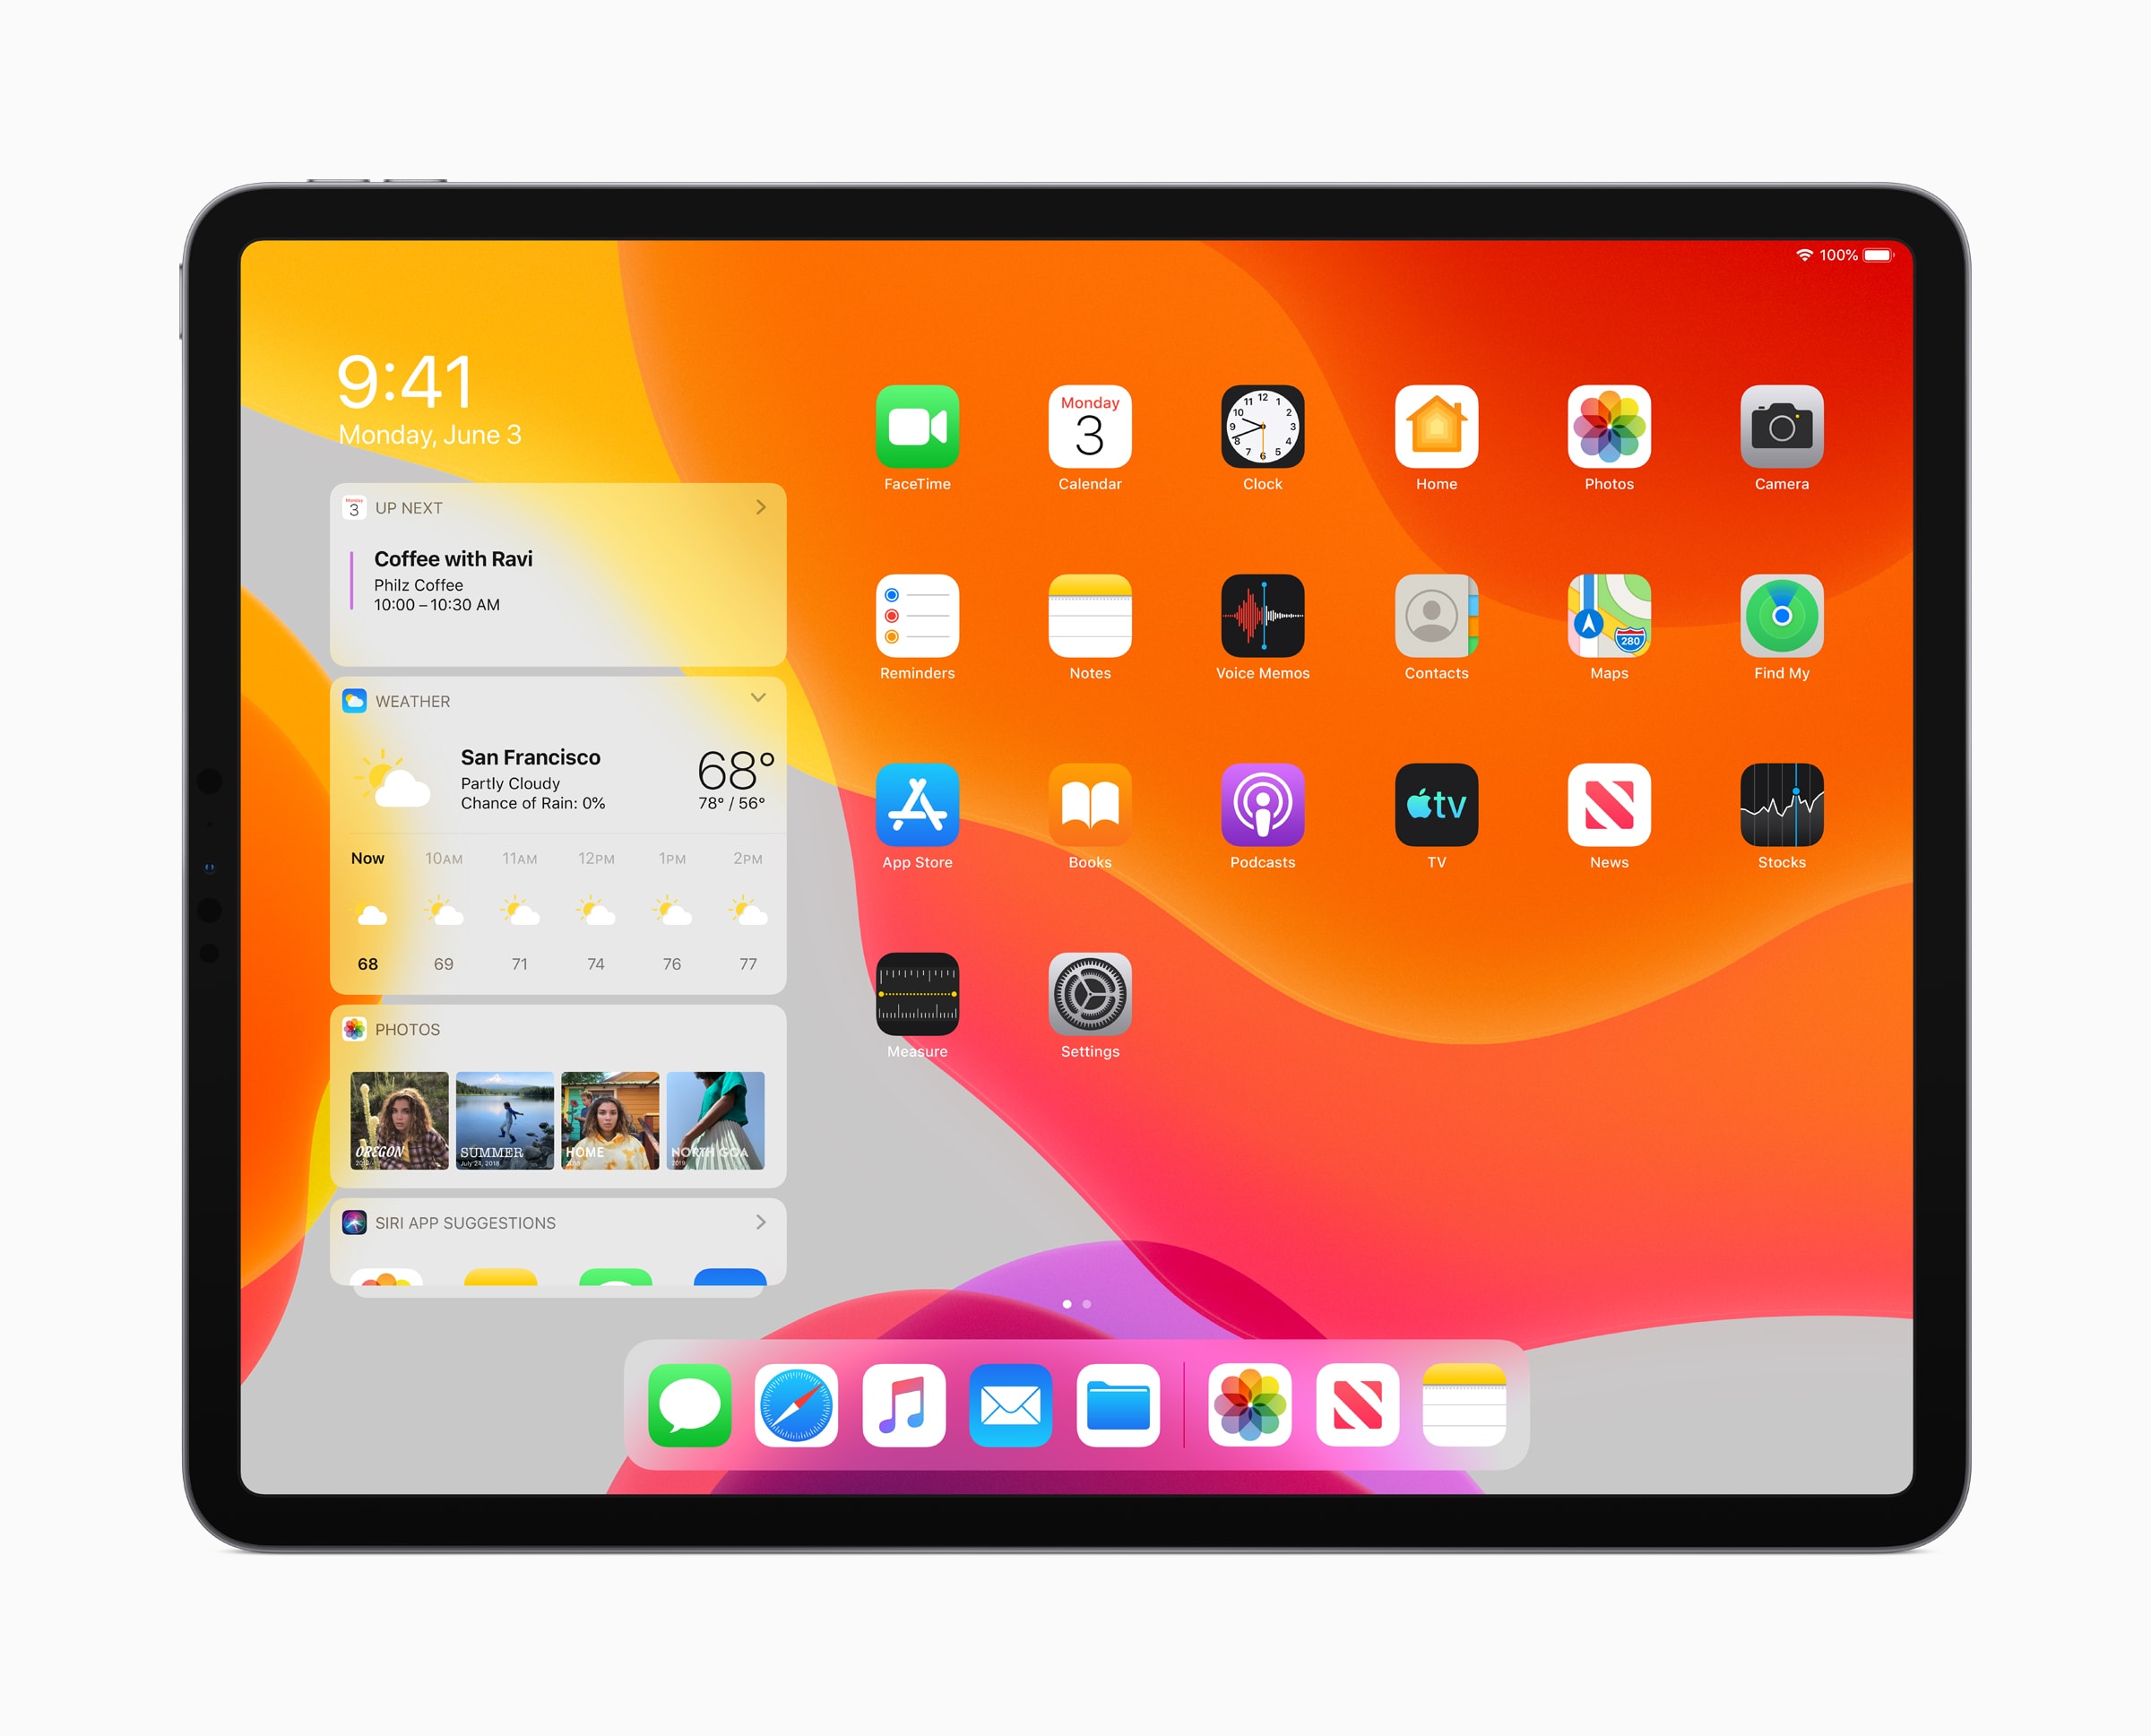 Tela inicial do iPad com o iPadOS 13